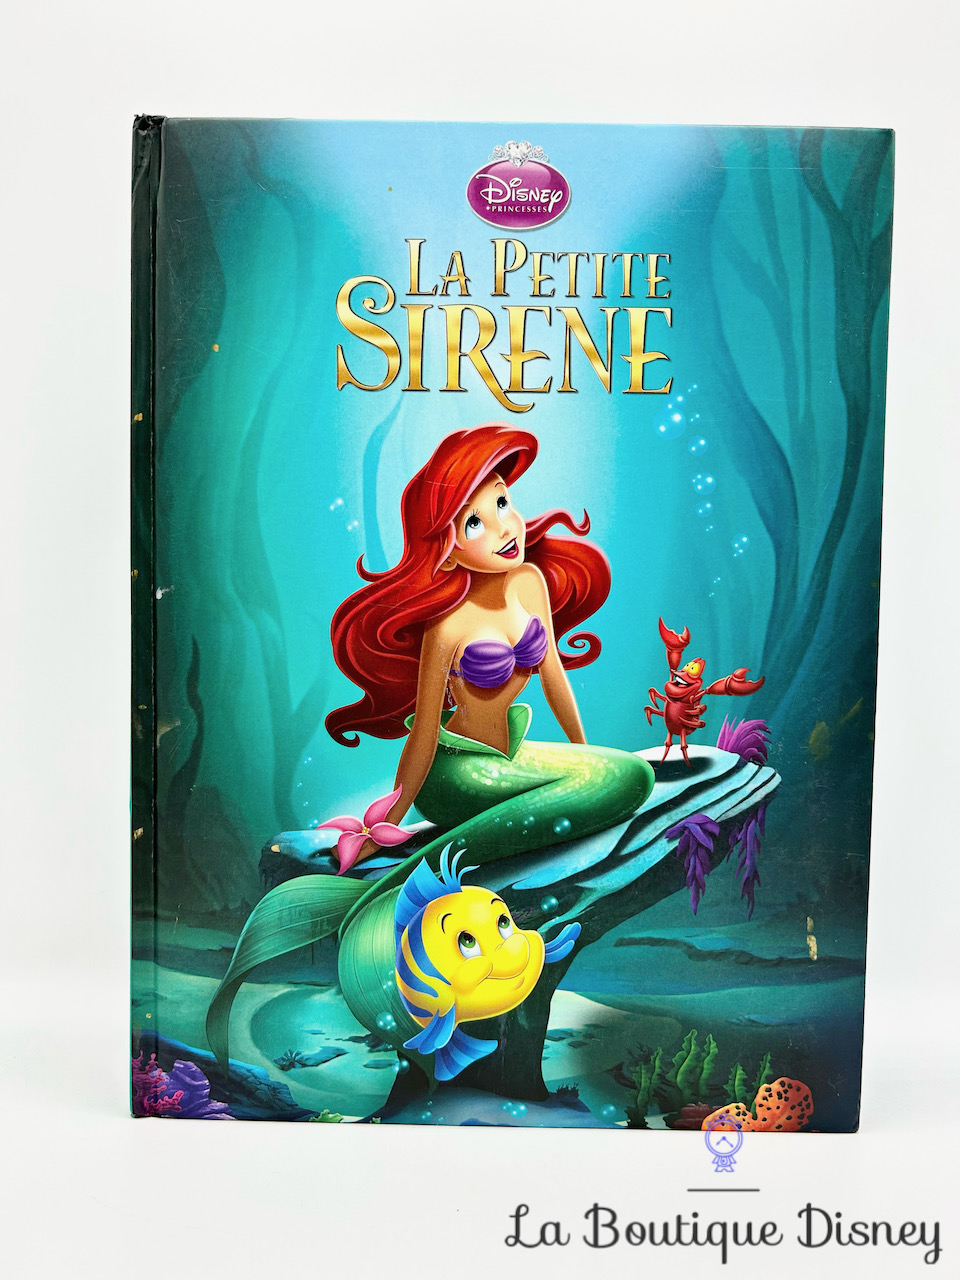 LA PETITE SIRÈNE - Disney Cinéma - L'histoire du film - Disney Princesses:  L'histoire du film : Hachette Jeunesse: : Bücher